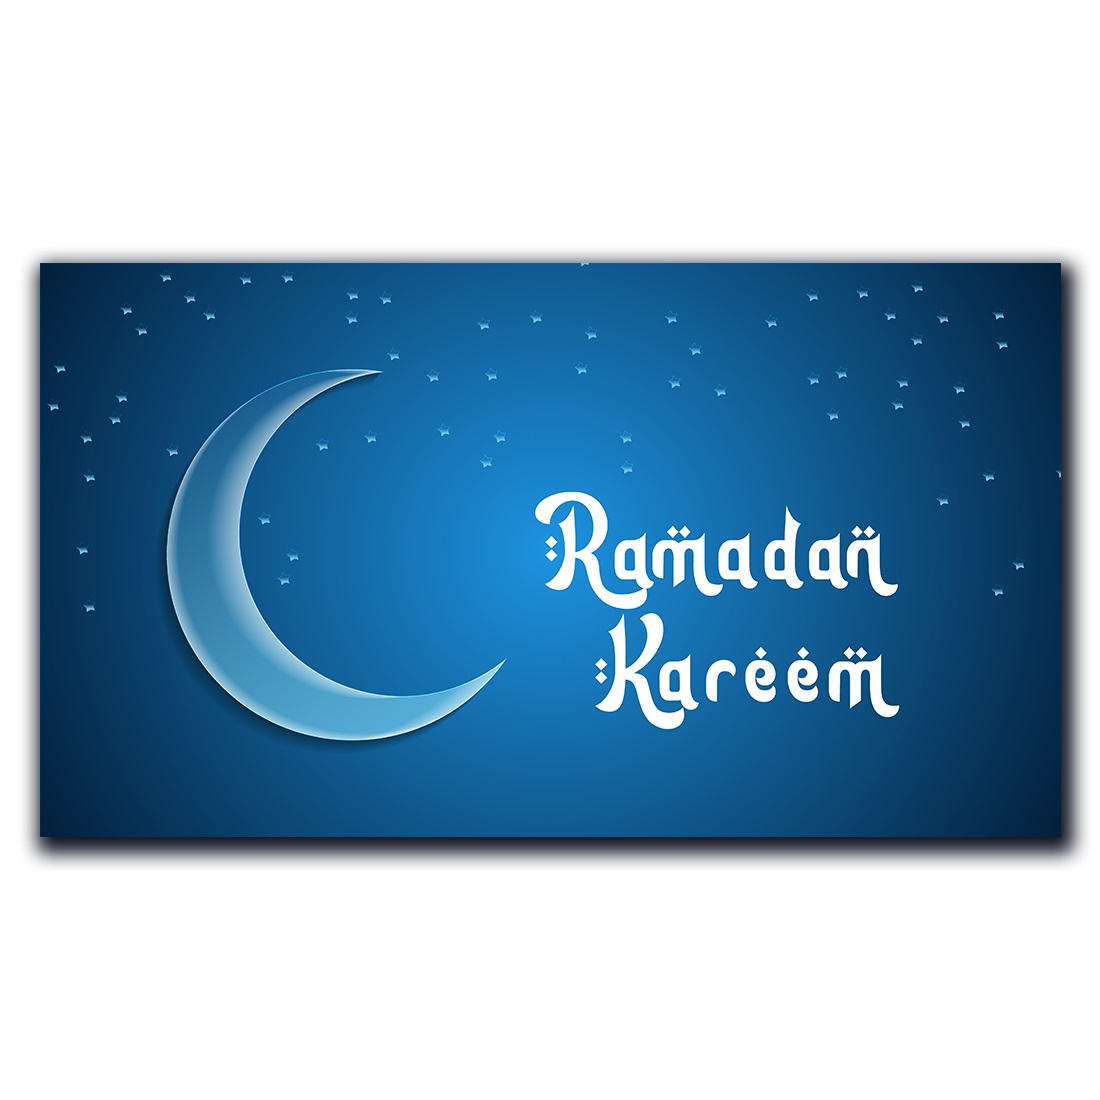 Ramadan Kareem greetings banner design cover image.